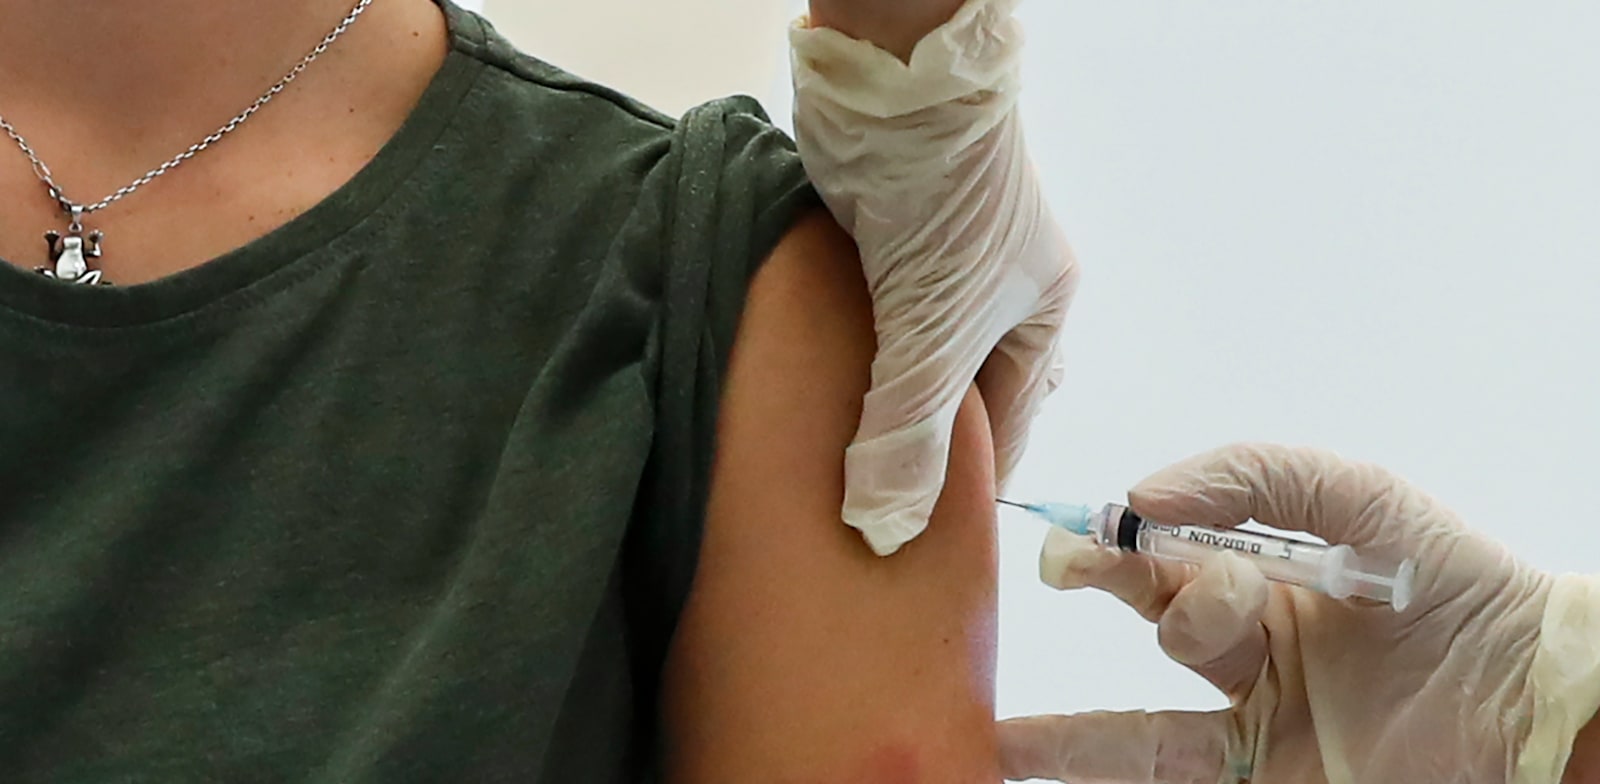 אשת רפואה מקבלת את החיסון ספוטניק 5, כחלק ממבצע חיסונים מורחב ברוסיה / צילום: Associated Press, Pavel Golovkin